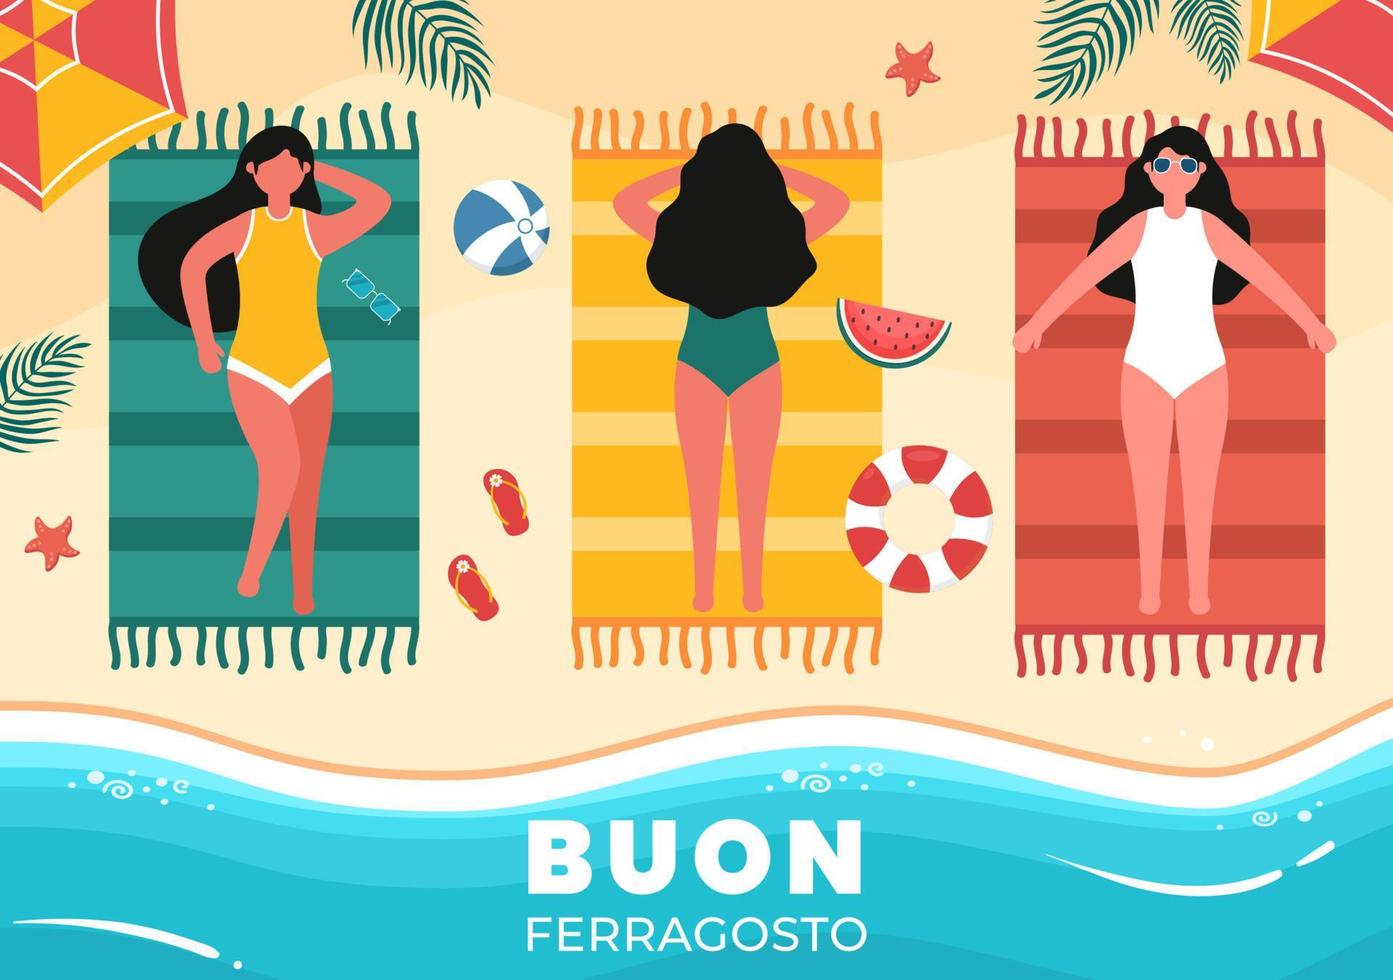 buon ferragosto festival de verano italiano en ilustración de dibujos animados de playa en día festivo celebrado el 15 de agosto en diseño de estilo plano vector